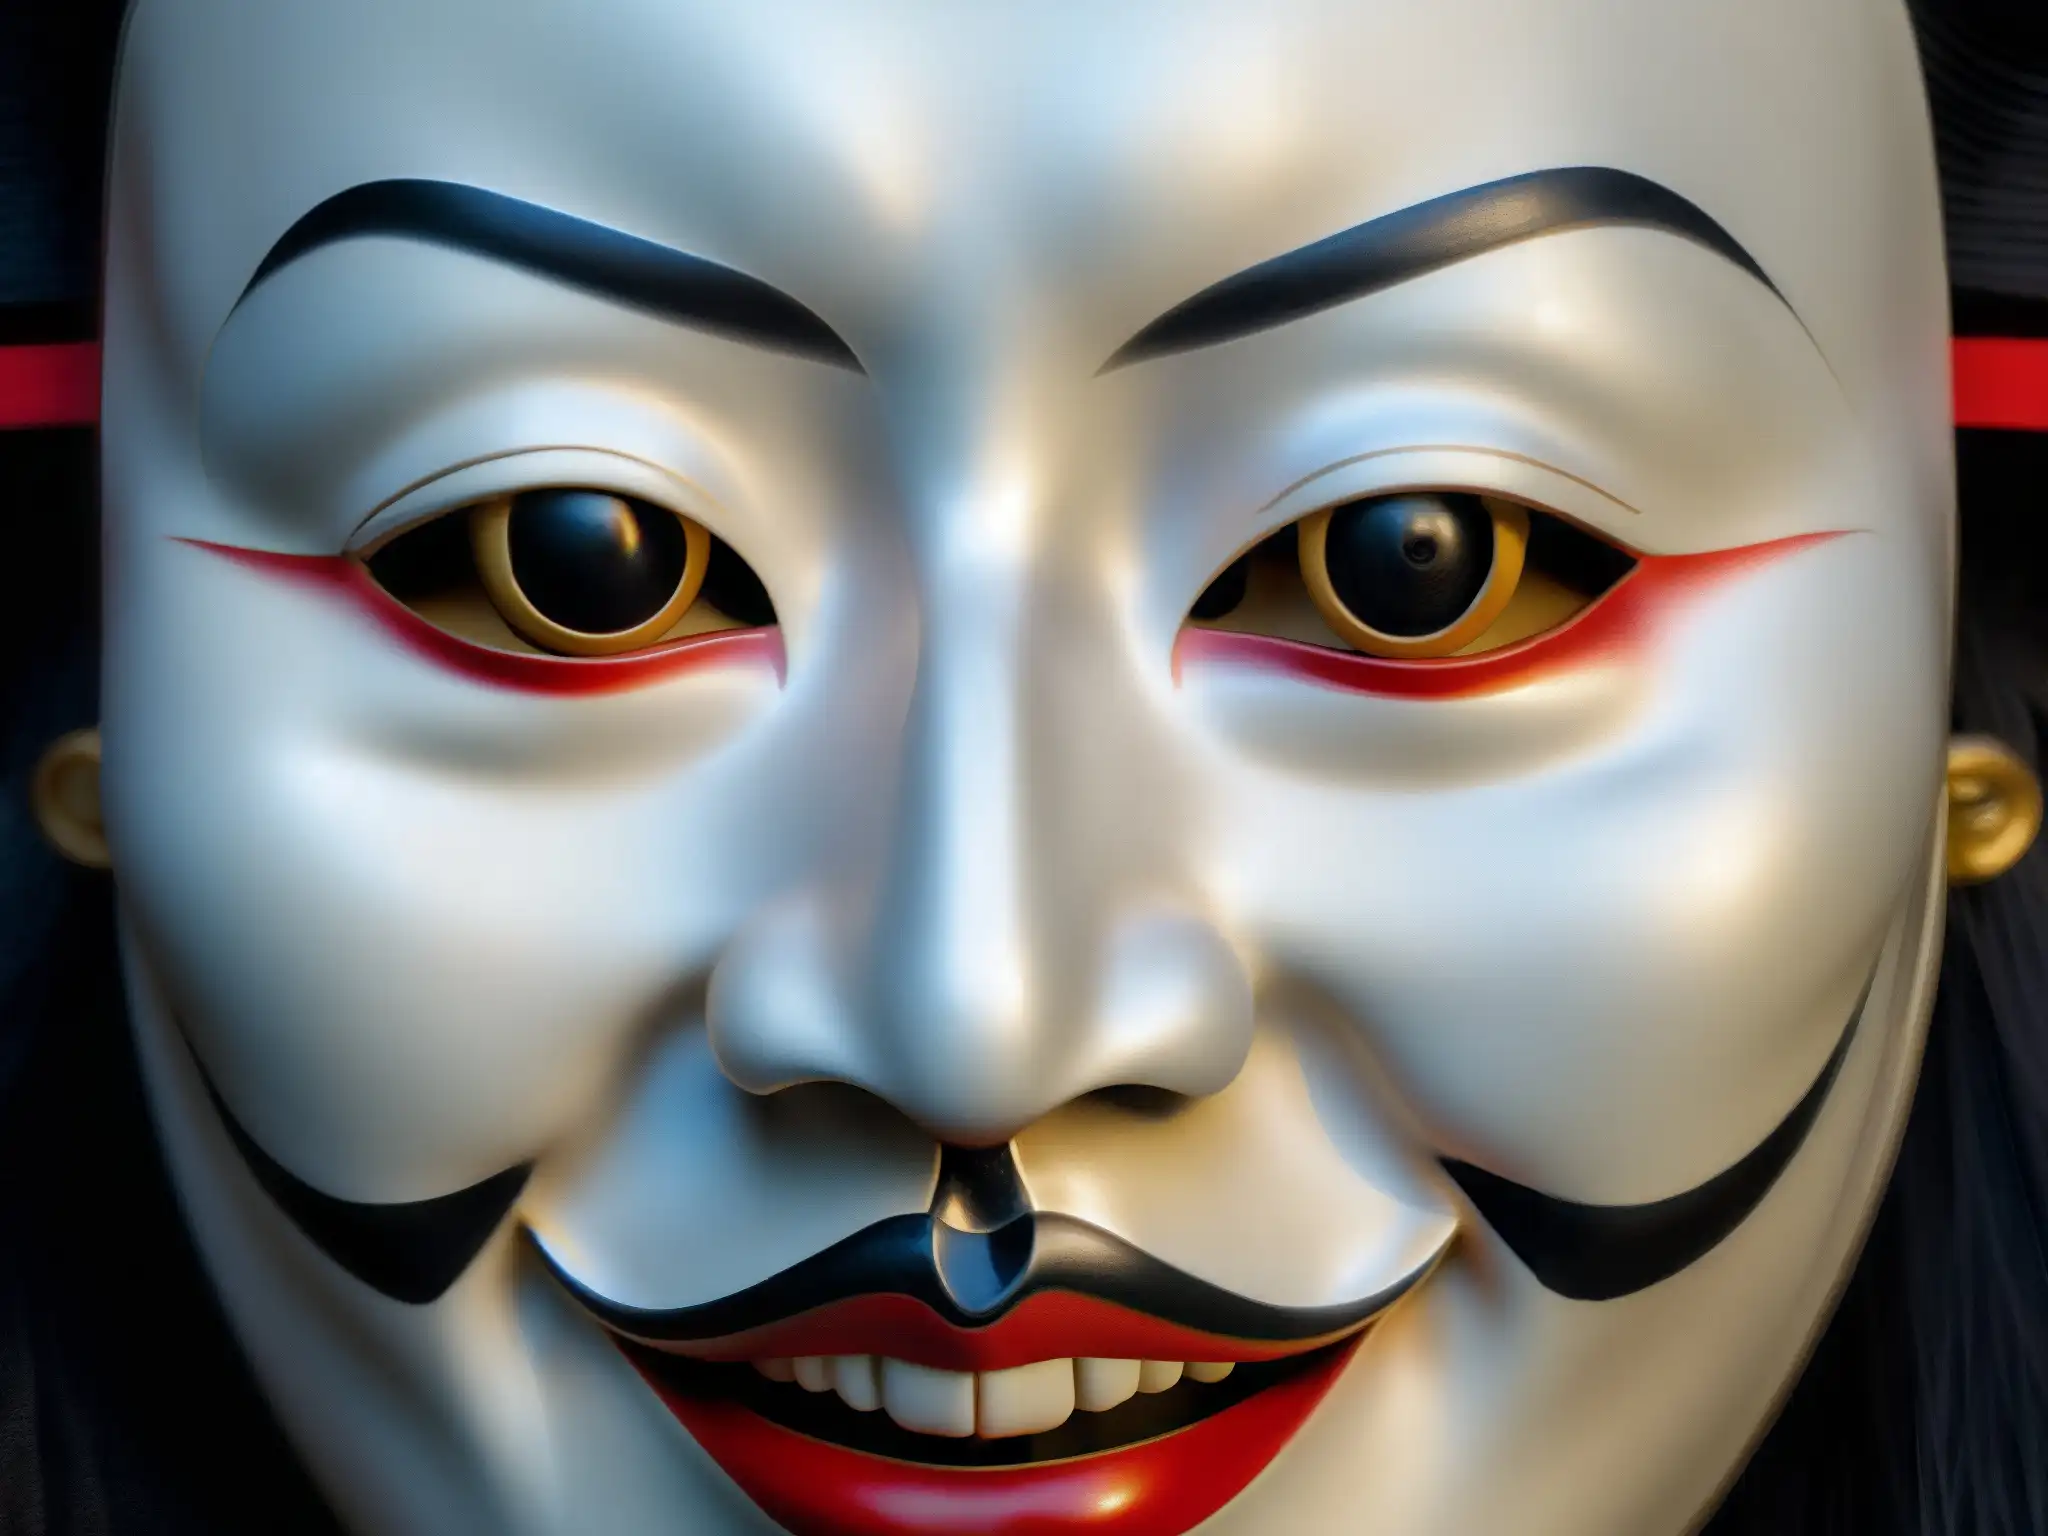 Detallada máscara Noh japonesa de Kuchisake Onna, con rostro sereno y pintura detallada, evocando misterio y verdad detrás de KuchisakeOnna